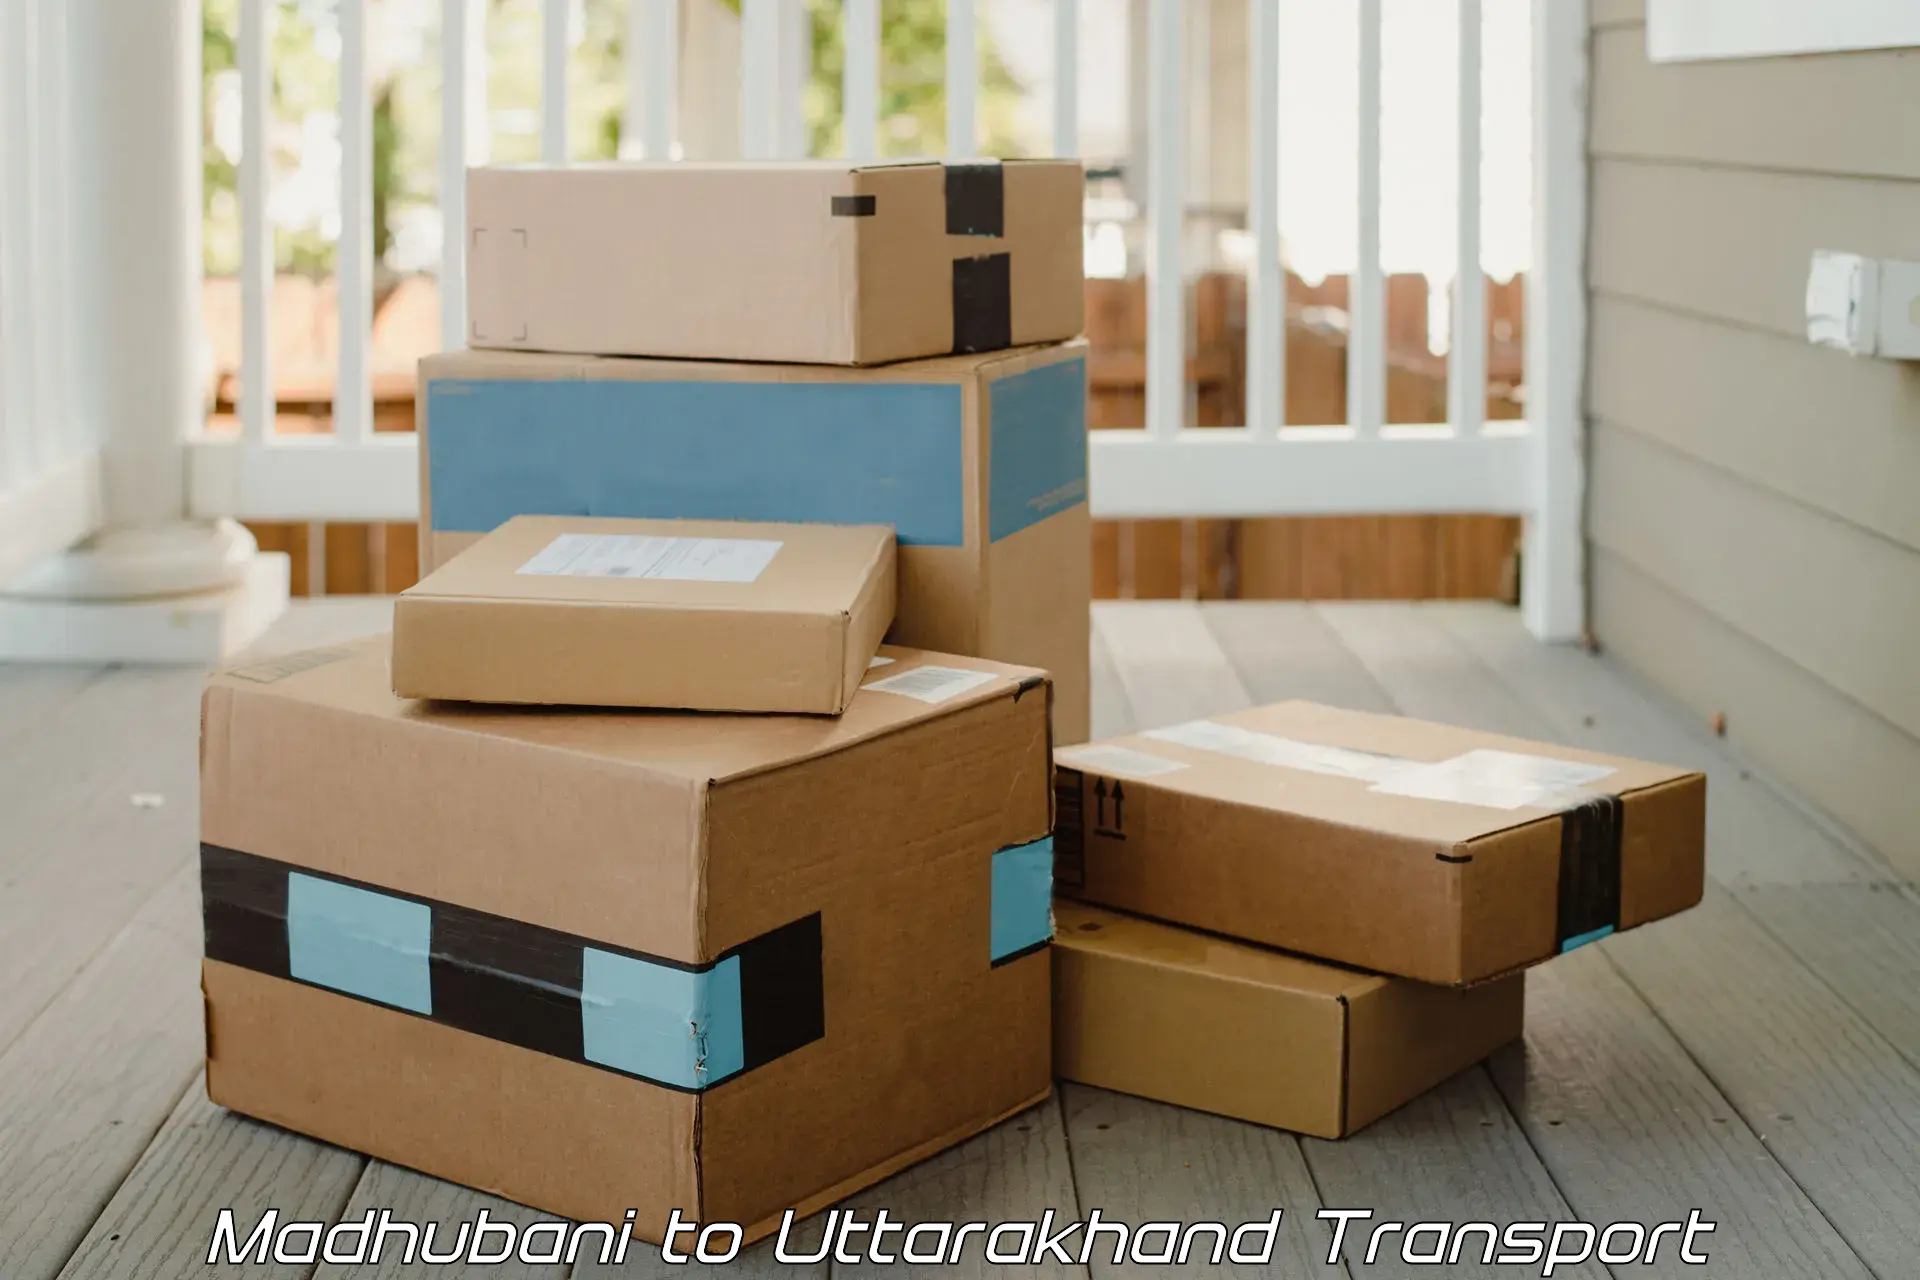 Road transport online services Madhubani to Uttarakhand